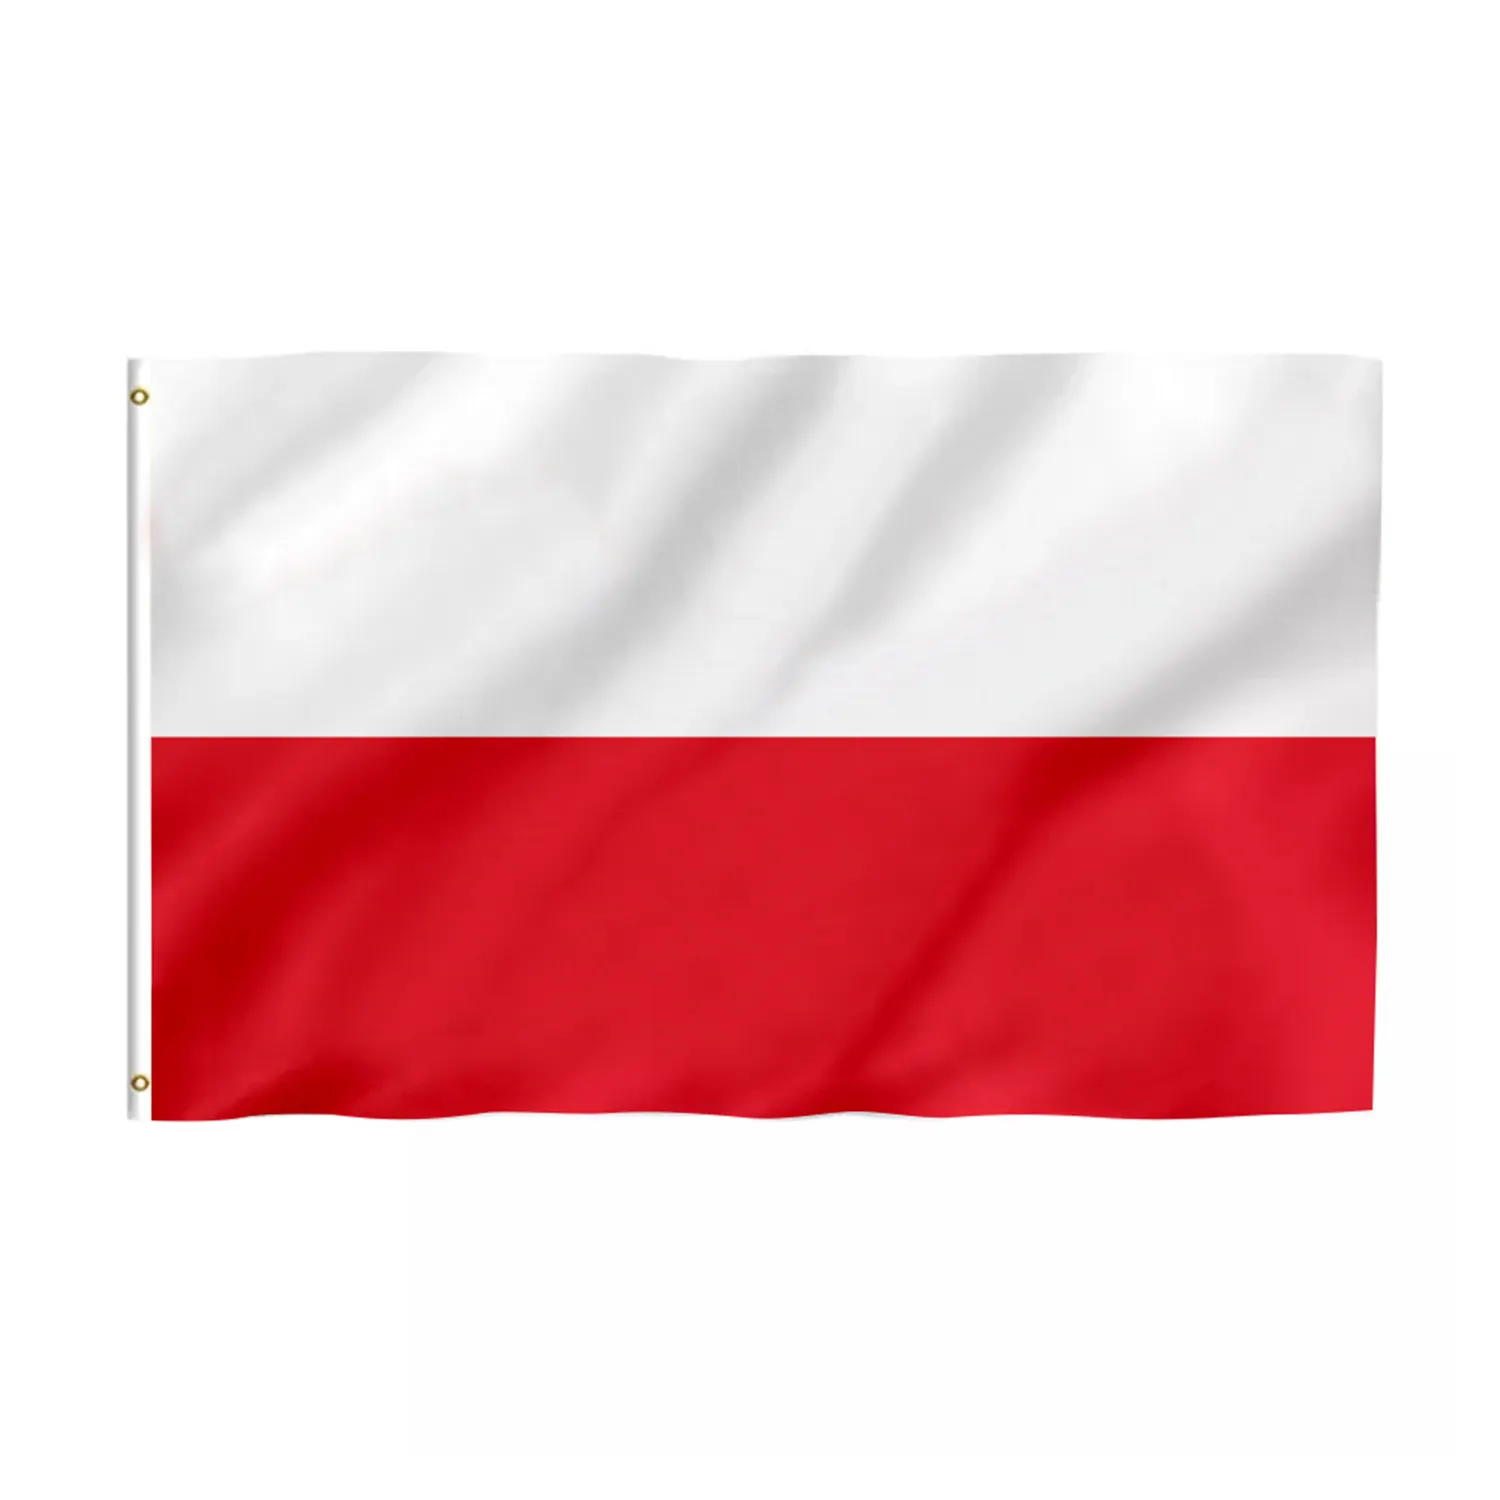 Pronto per la spedizione prodotto promozionale 3x5 Ft bandiera polonia 100% poliestere bandiera polonia con occhielli in ottone bandiera polonia